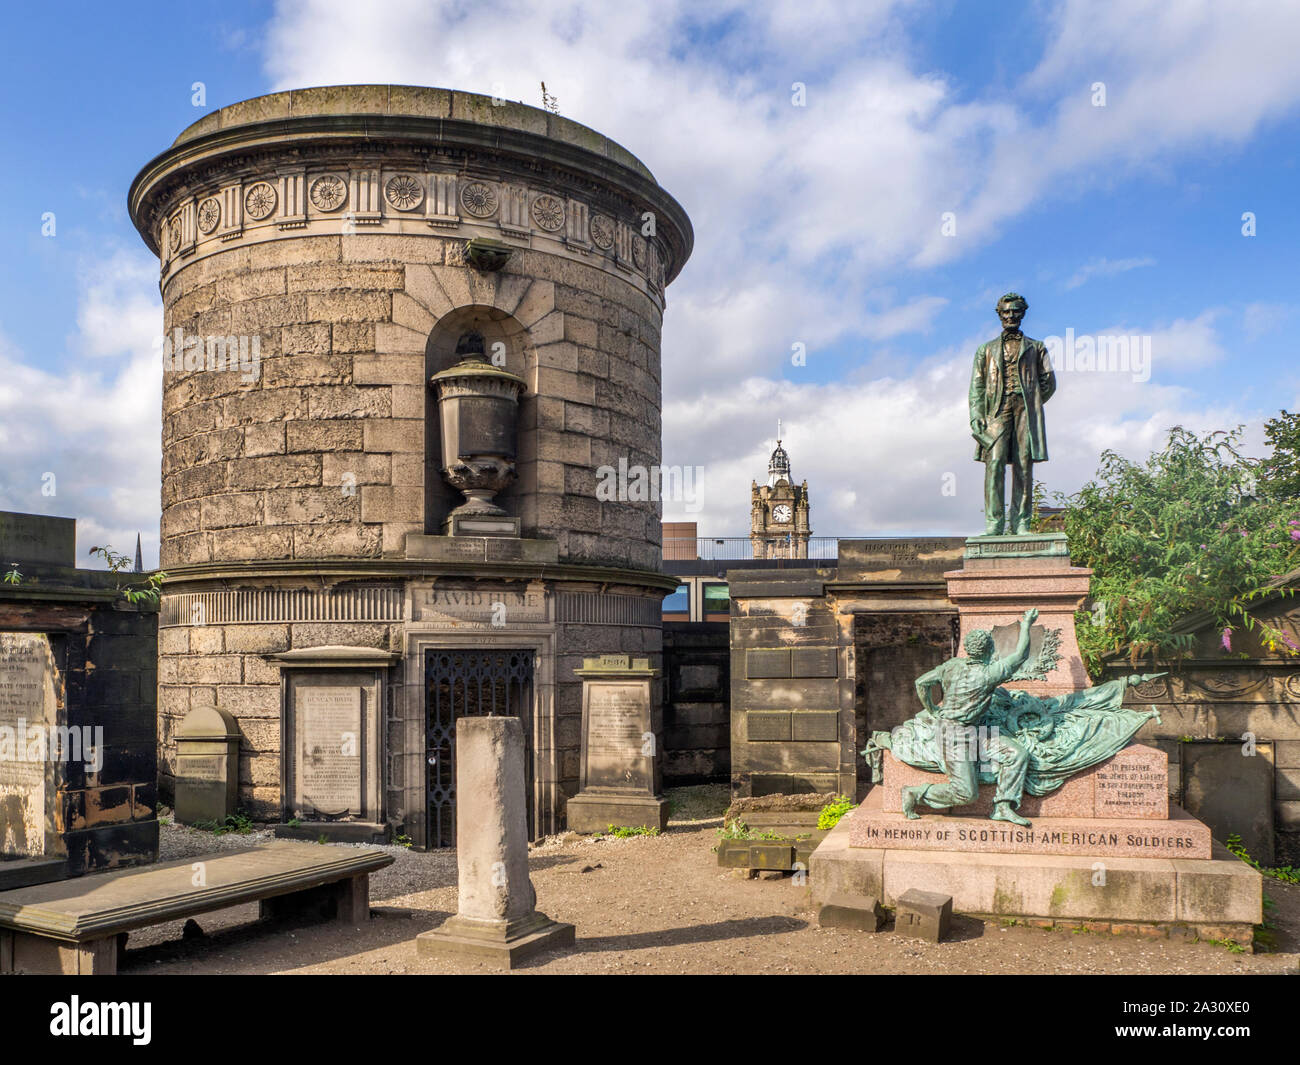 David Hume et écossais des soldats américains monuments historiques à l'ancien cimetière de Calton Hill Calton à Edimbourg en Ecosse Banque D'Images